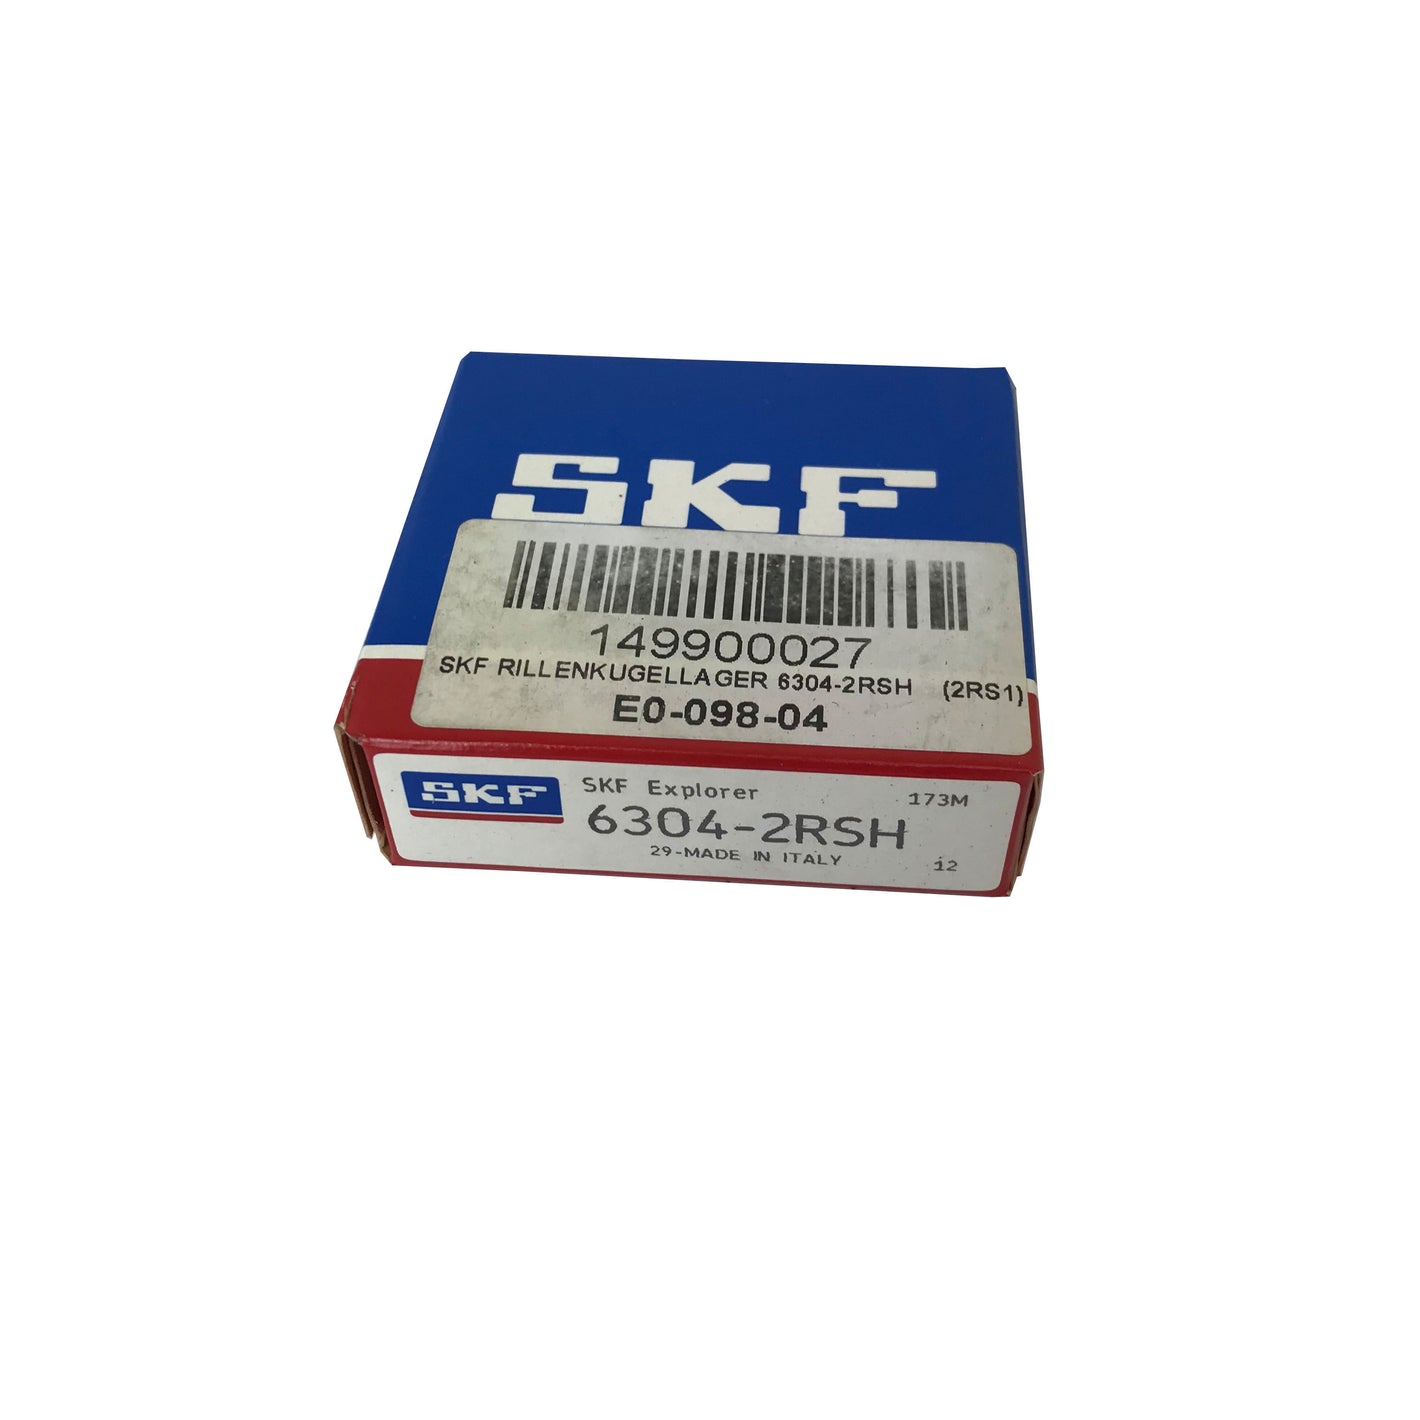 SKF Explorer 6304-2RSH 20x52x15mm Rillenkugellager